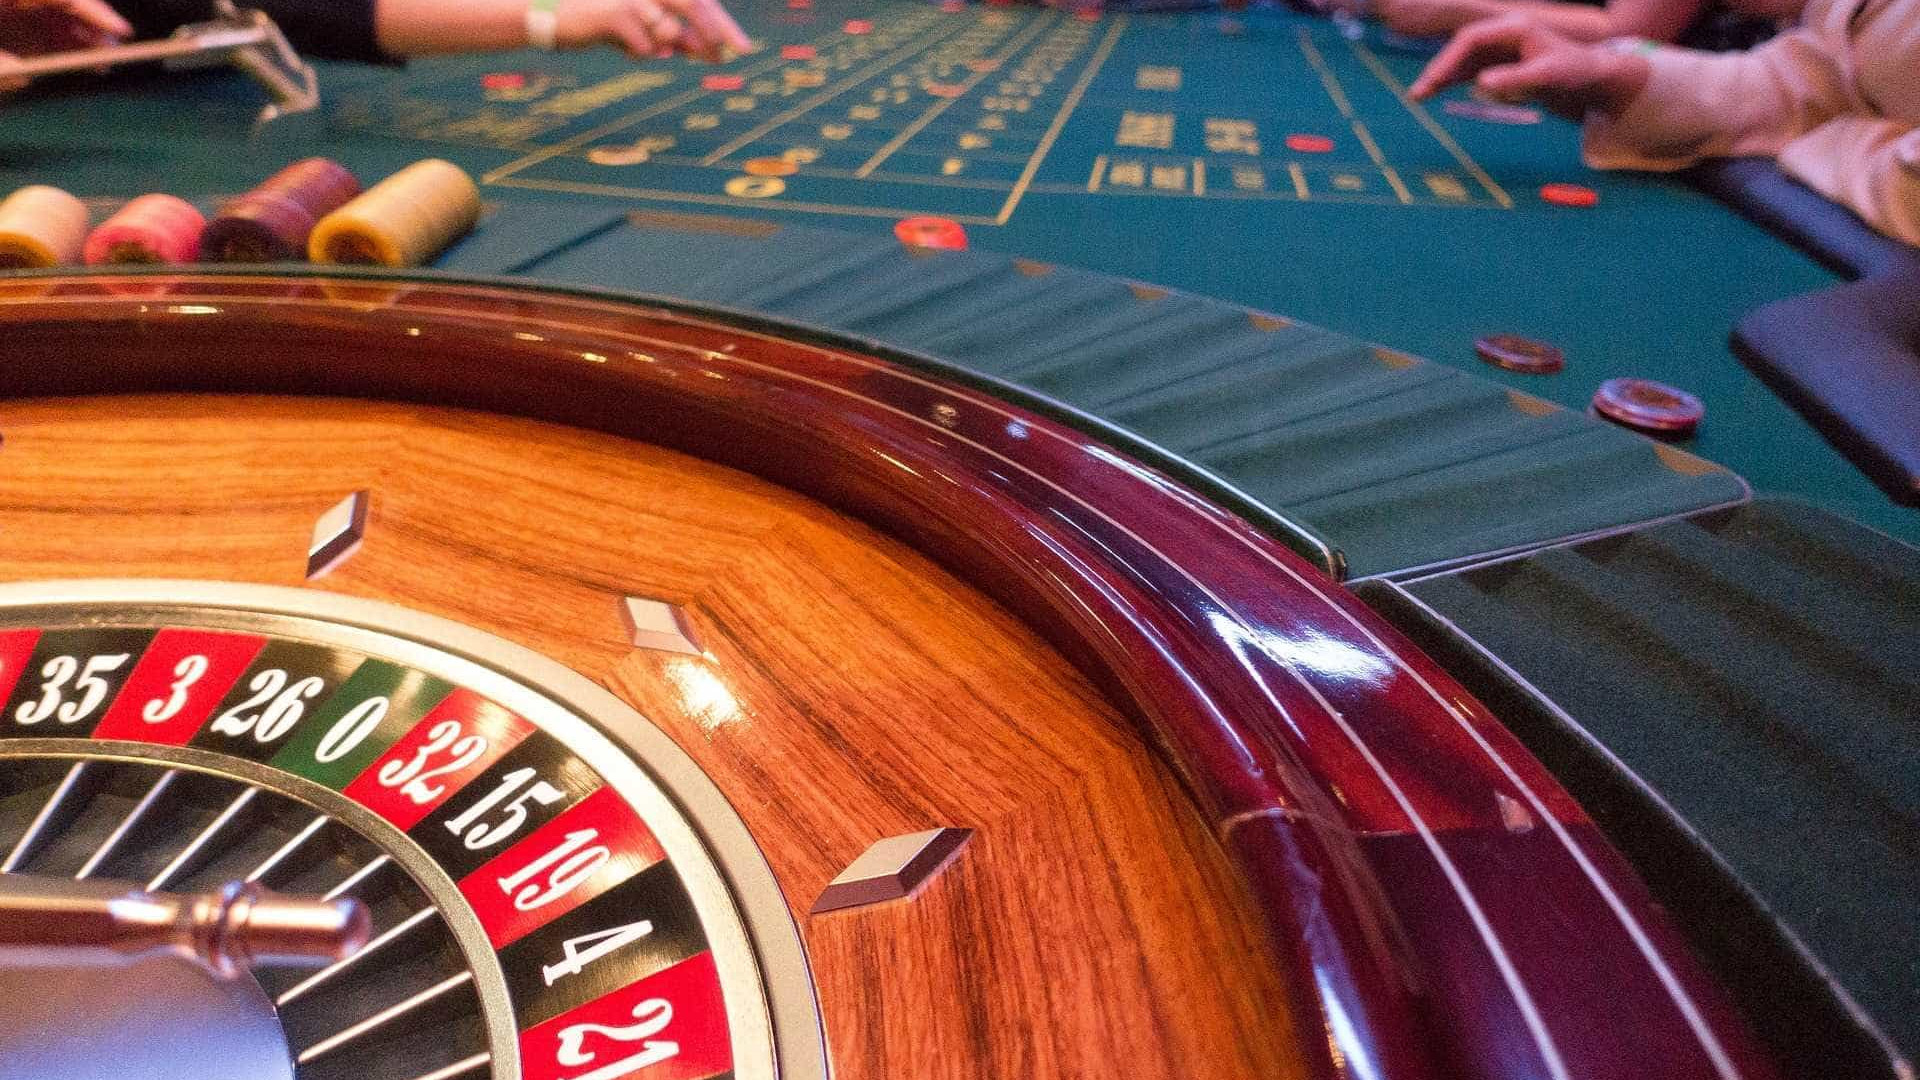 Governadores propõem legalizar jogos de azar para financiar segurança